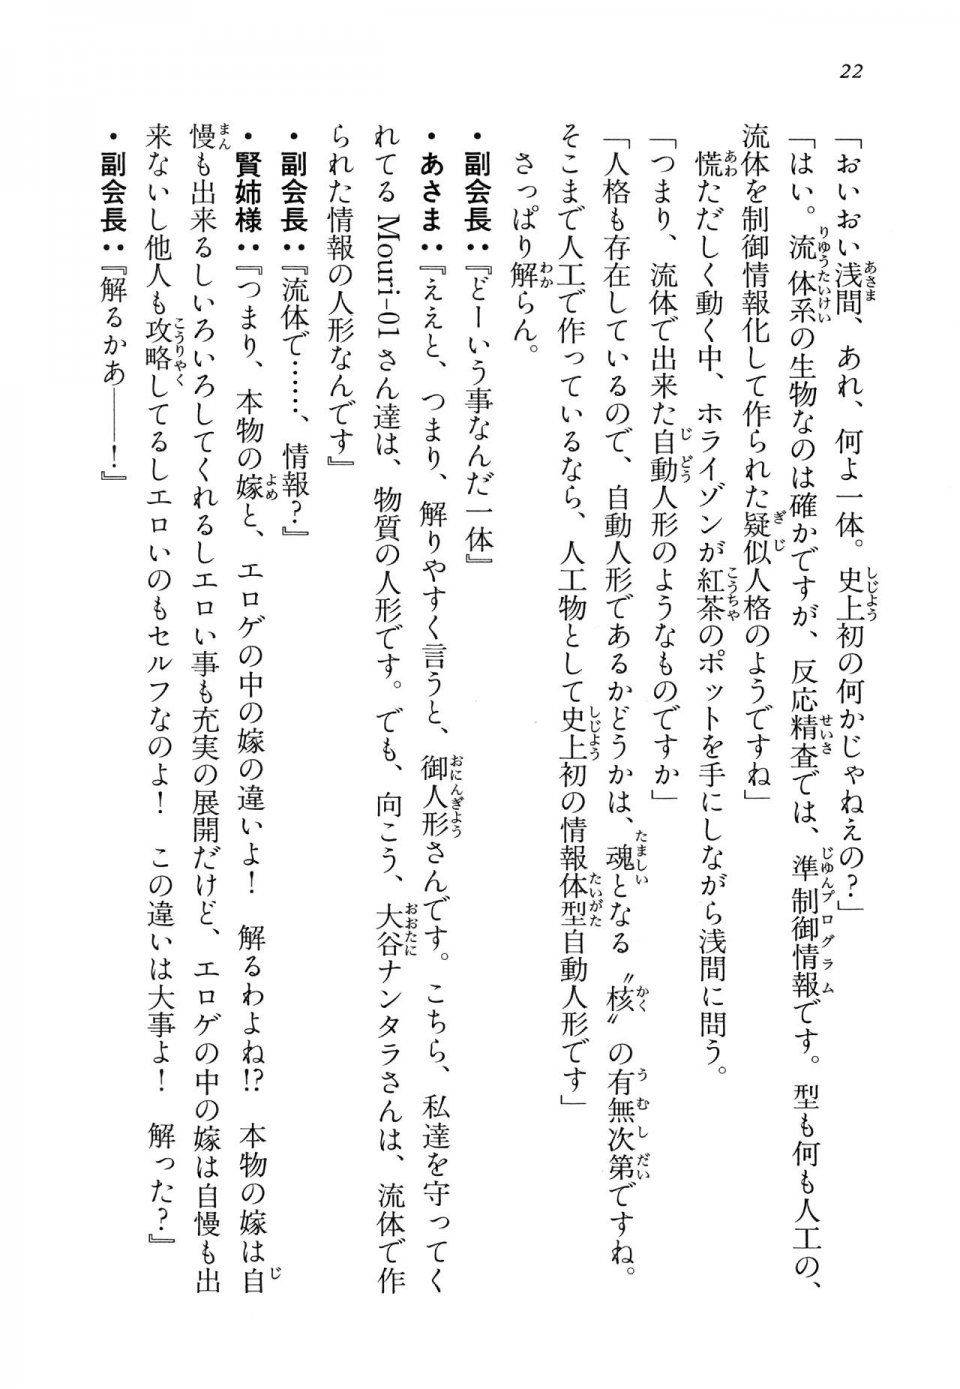 Kyoukai Senjou no Horizon LN Vol 14(6B) - Photo #22